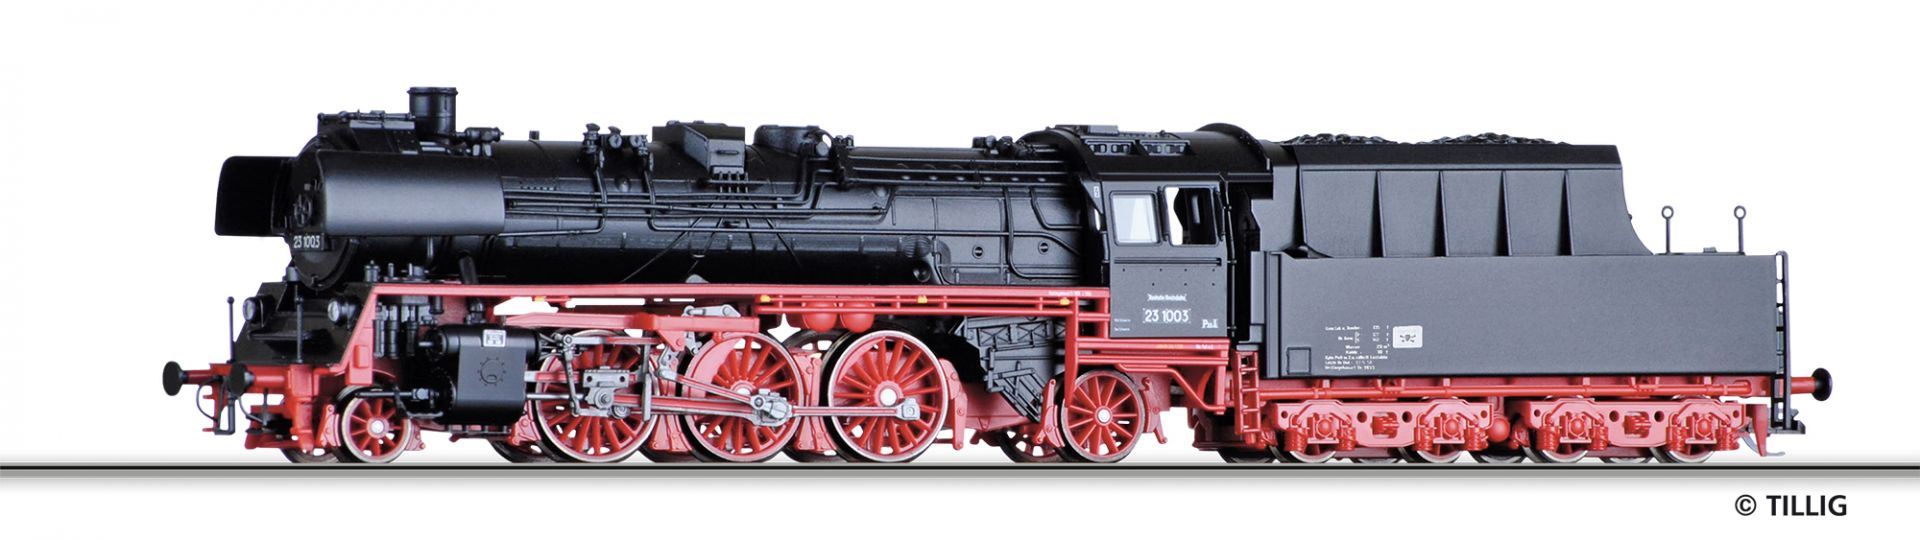 502266 | Dampflokomotive DR 